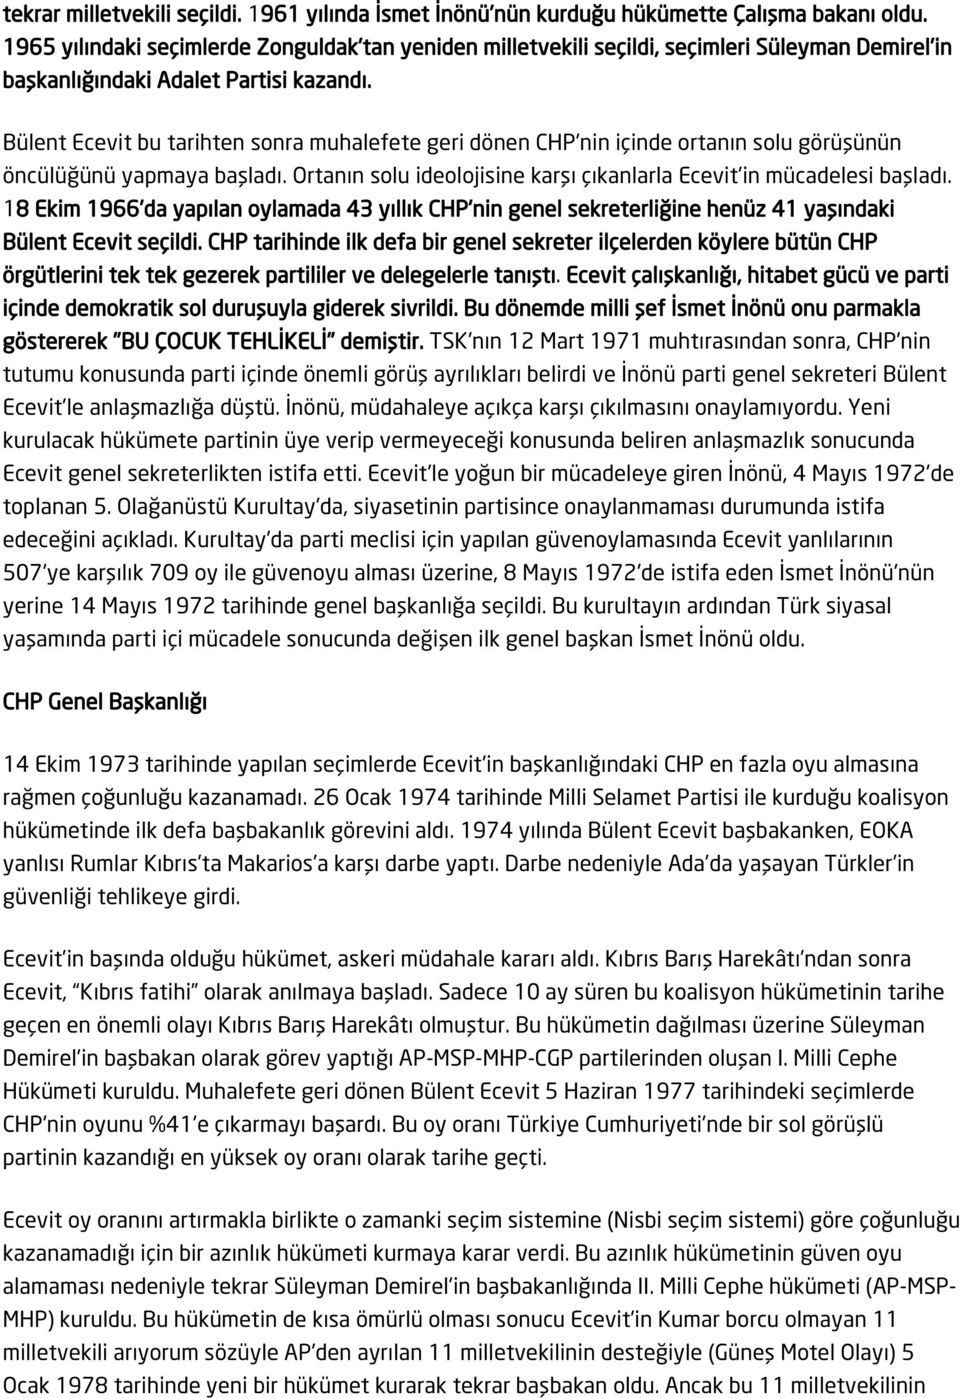 Bülent Ecevit bu tarihten sonra muhalefete geri dönen CHP'nin içinde ortanın solu görüşünün öncülüğünü yapmaya başladı. Ortanın solu ideolojisine karşı çıkanlarla Ecevit'in mücadelesi başladı.